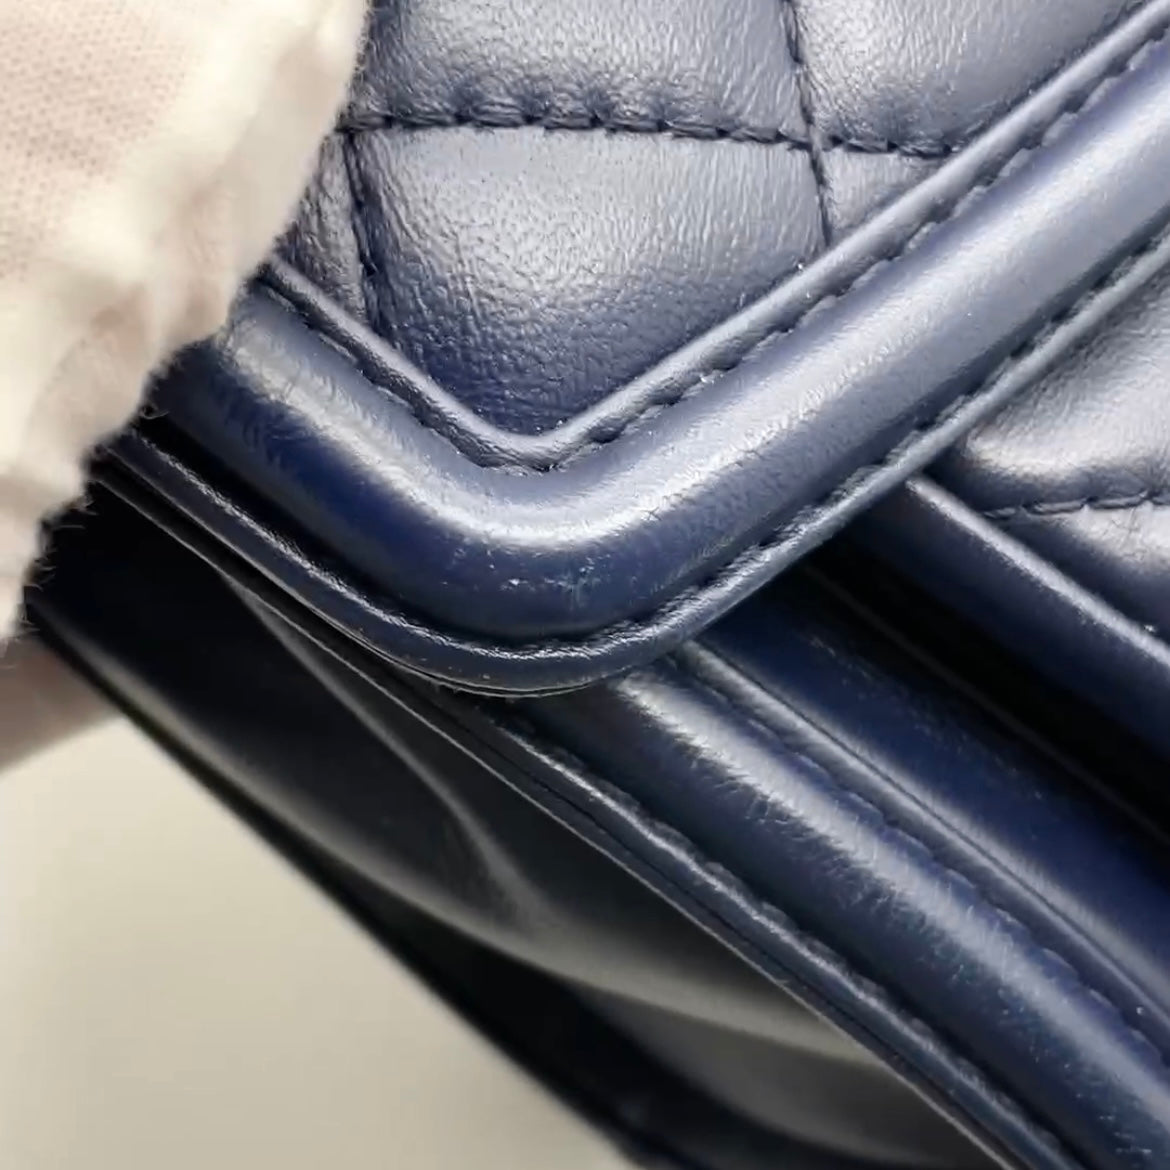 Preloved Chanel Flap Shoulder Bag